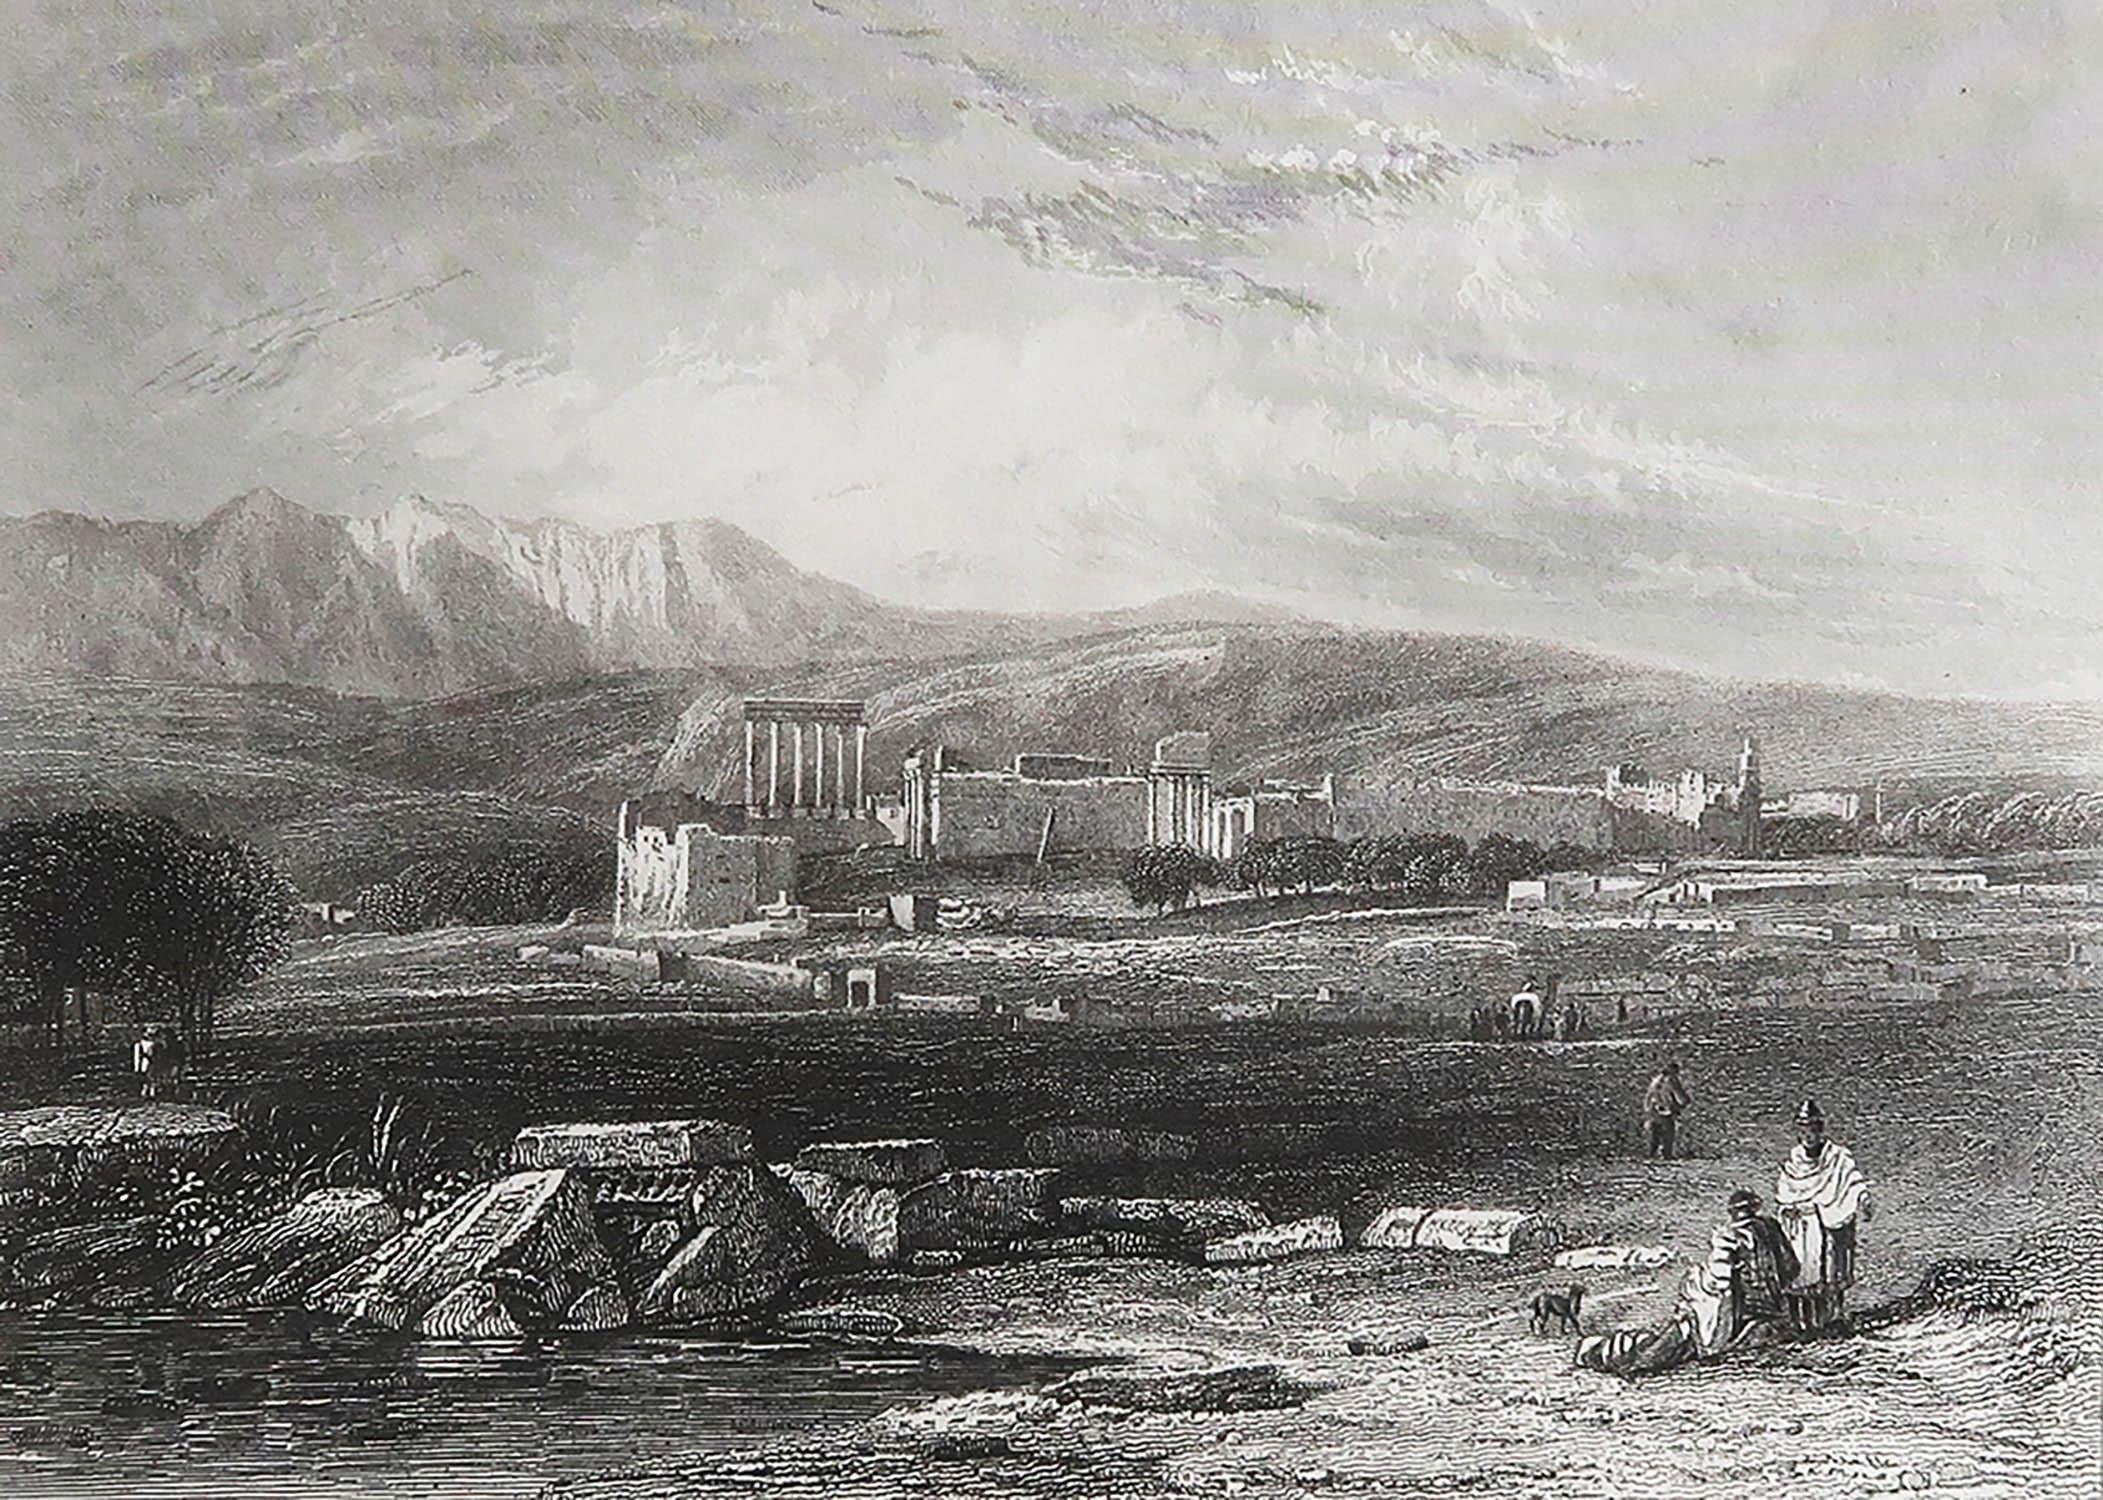 Magnifique image du temple de Baalbek.

Gravure sur acier d'après J.W Callcott

Publié par A.I.C. C.1850.

Non encadré.

